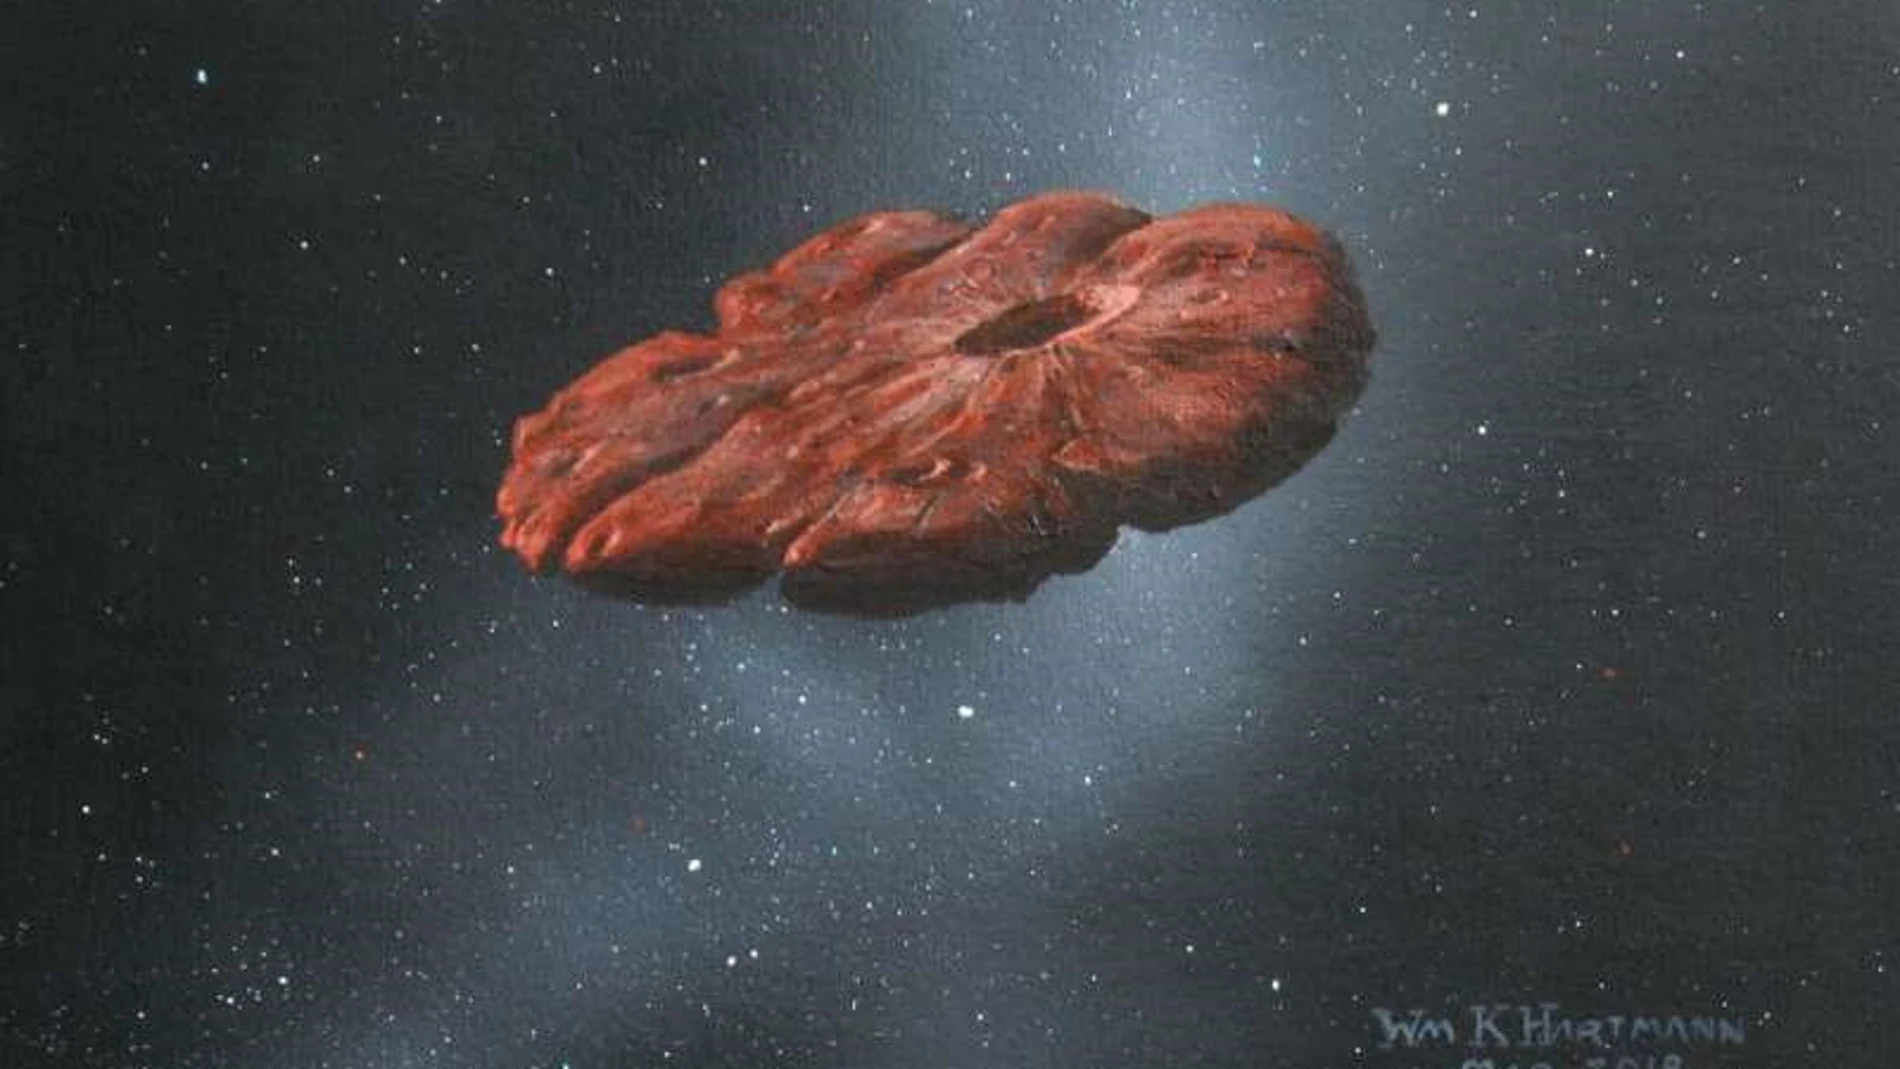 Reconstrucción de ‘Oumuamua realizada por William K. Hartmann en 2018 (No se trata de una reconstrucción hecha a tenor de los últimos artículos, como algunas fuentes parecen sostener)